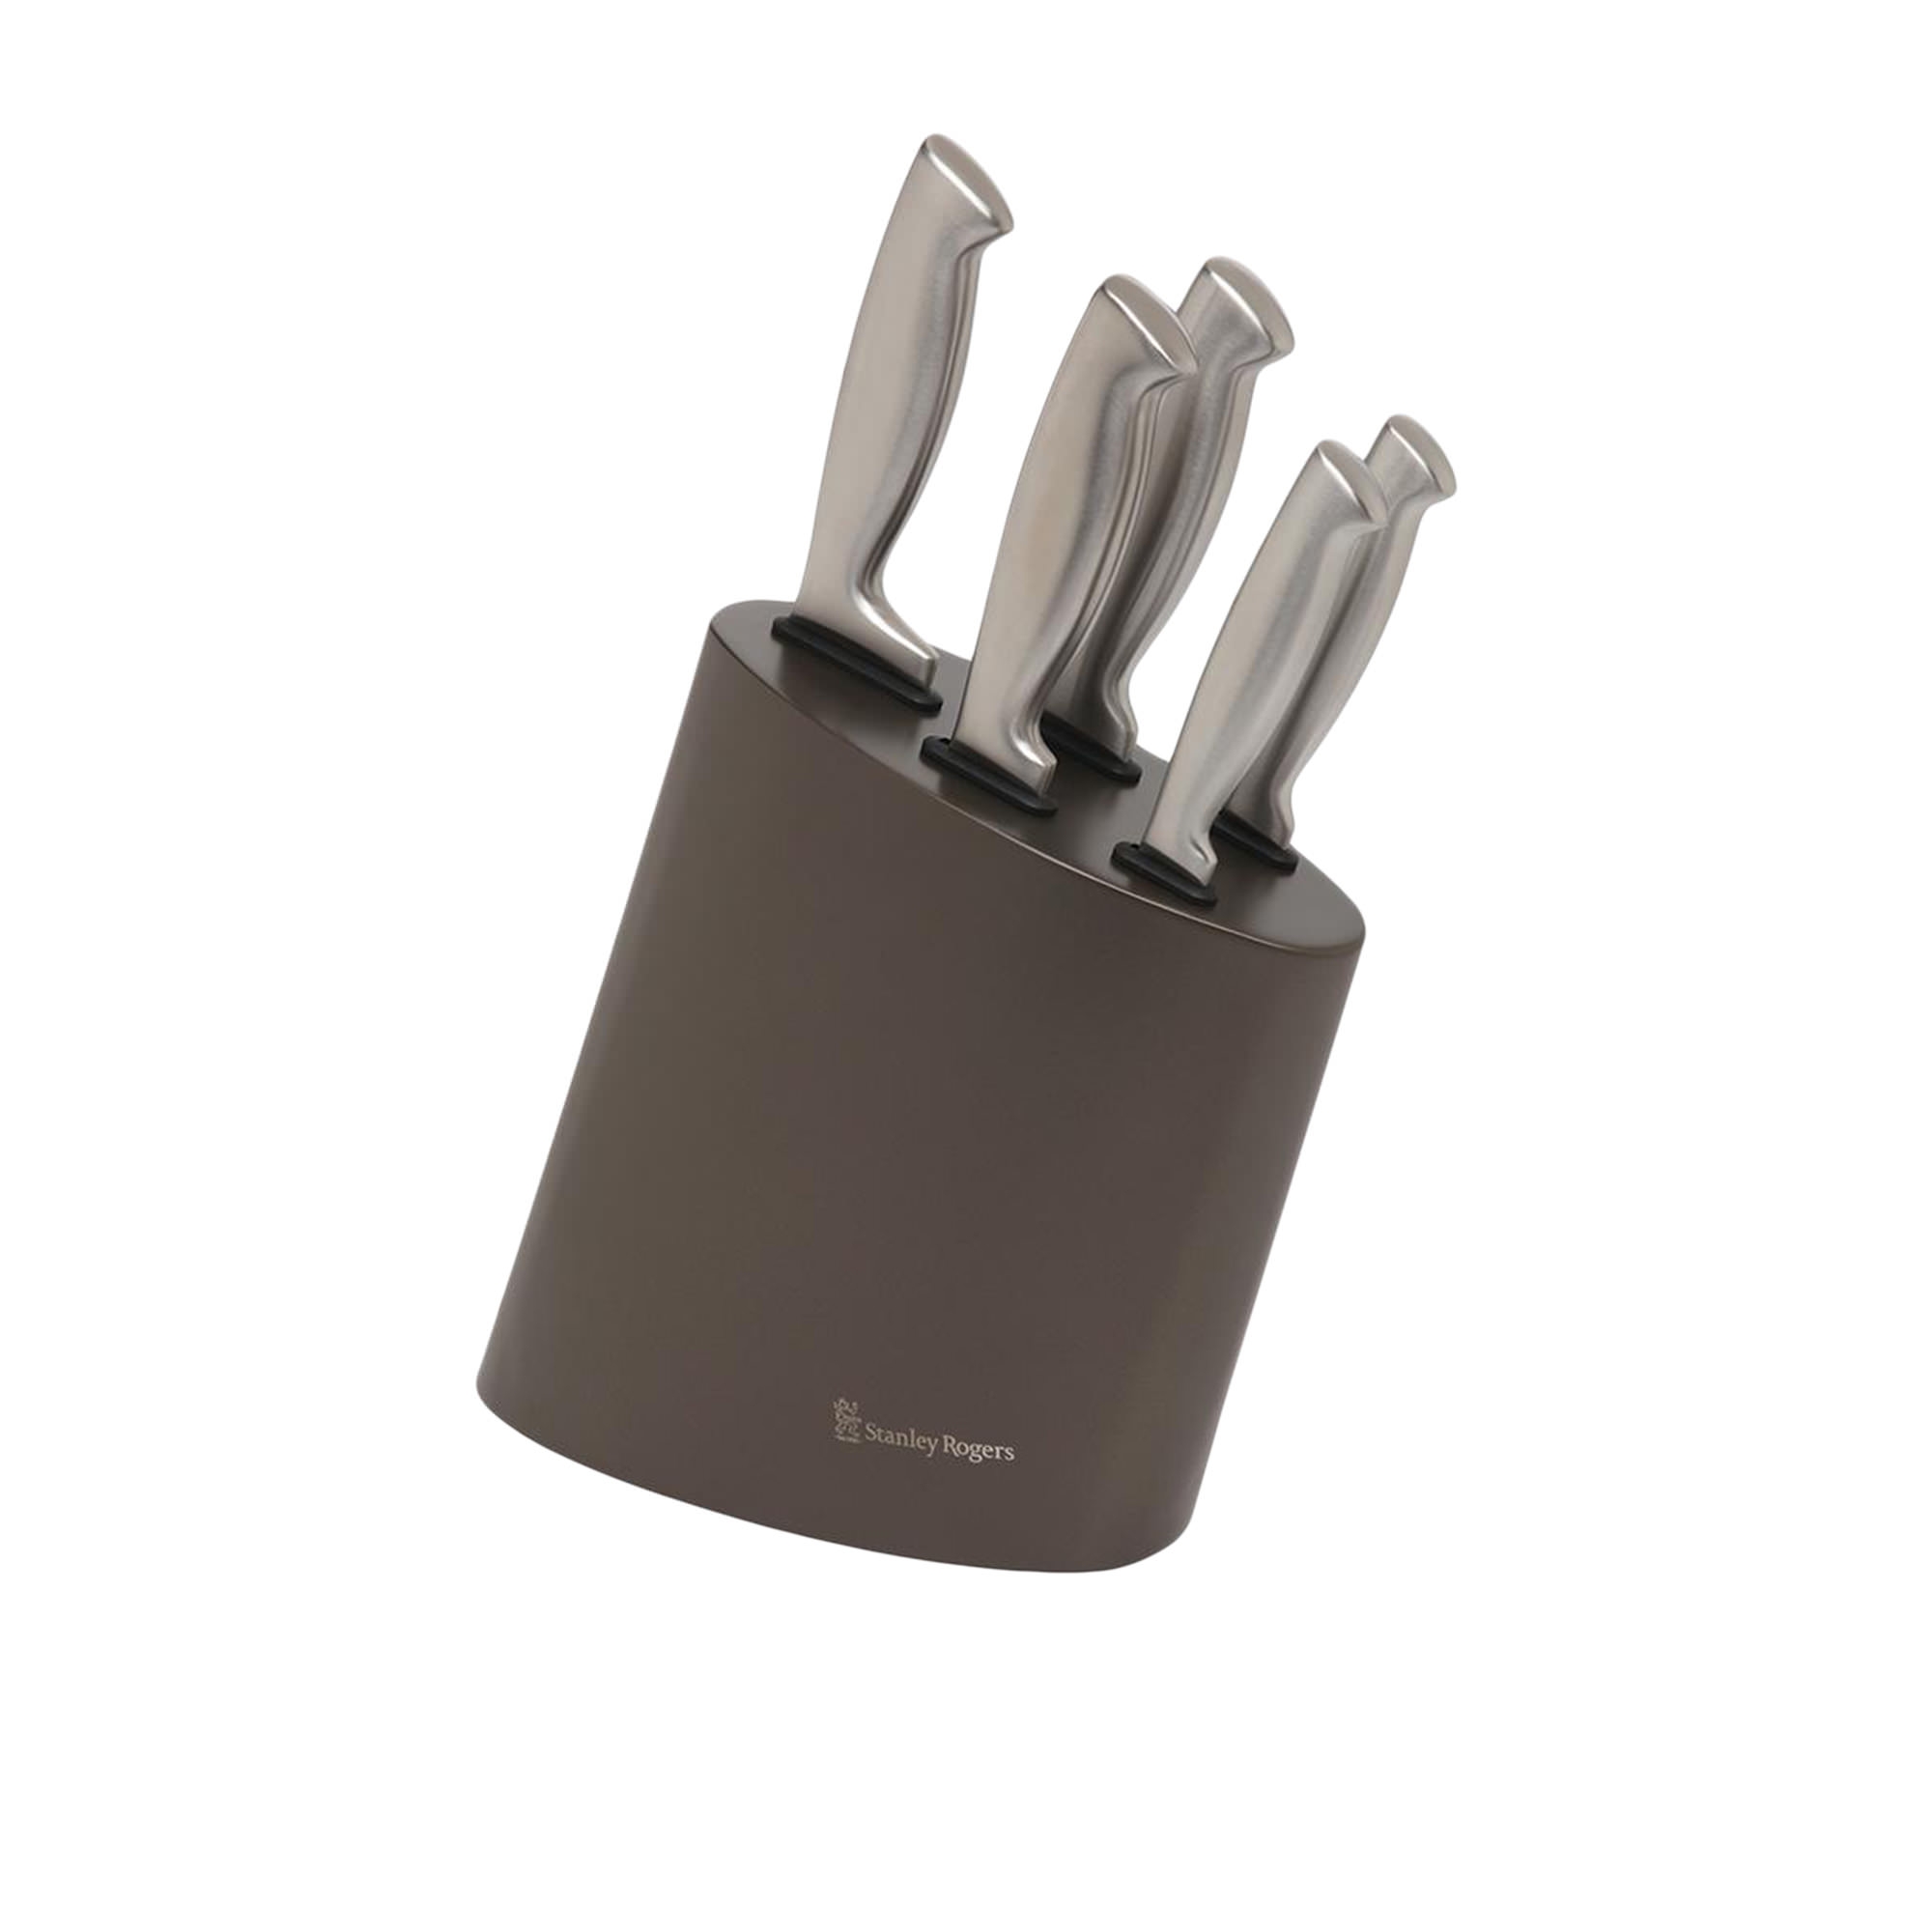 Stanley Rogers 6pc Modern Steel Metallic Knife Block Set Mocha Image 1